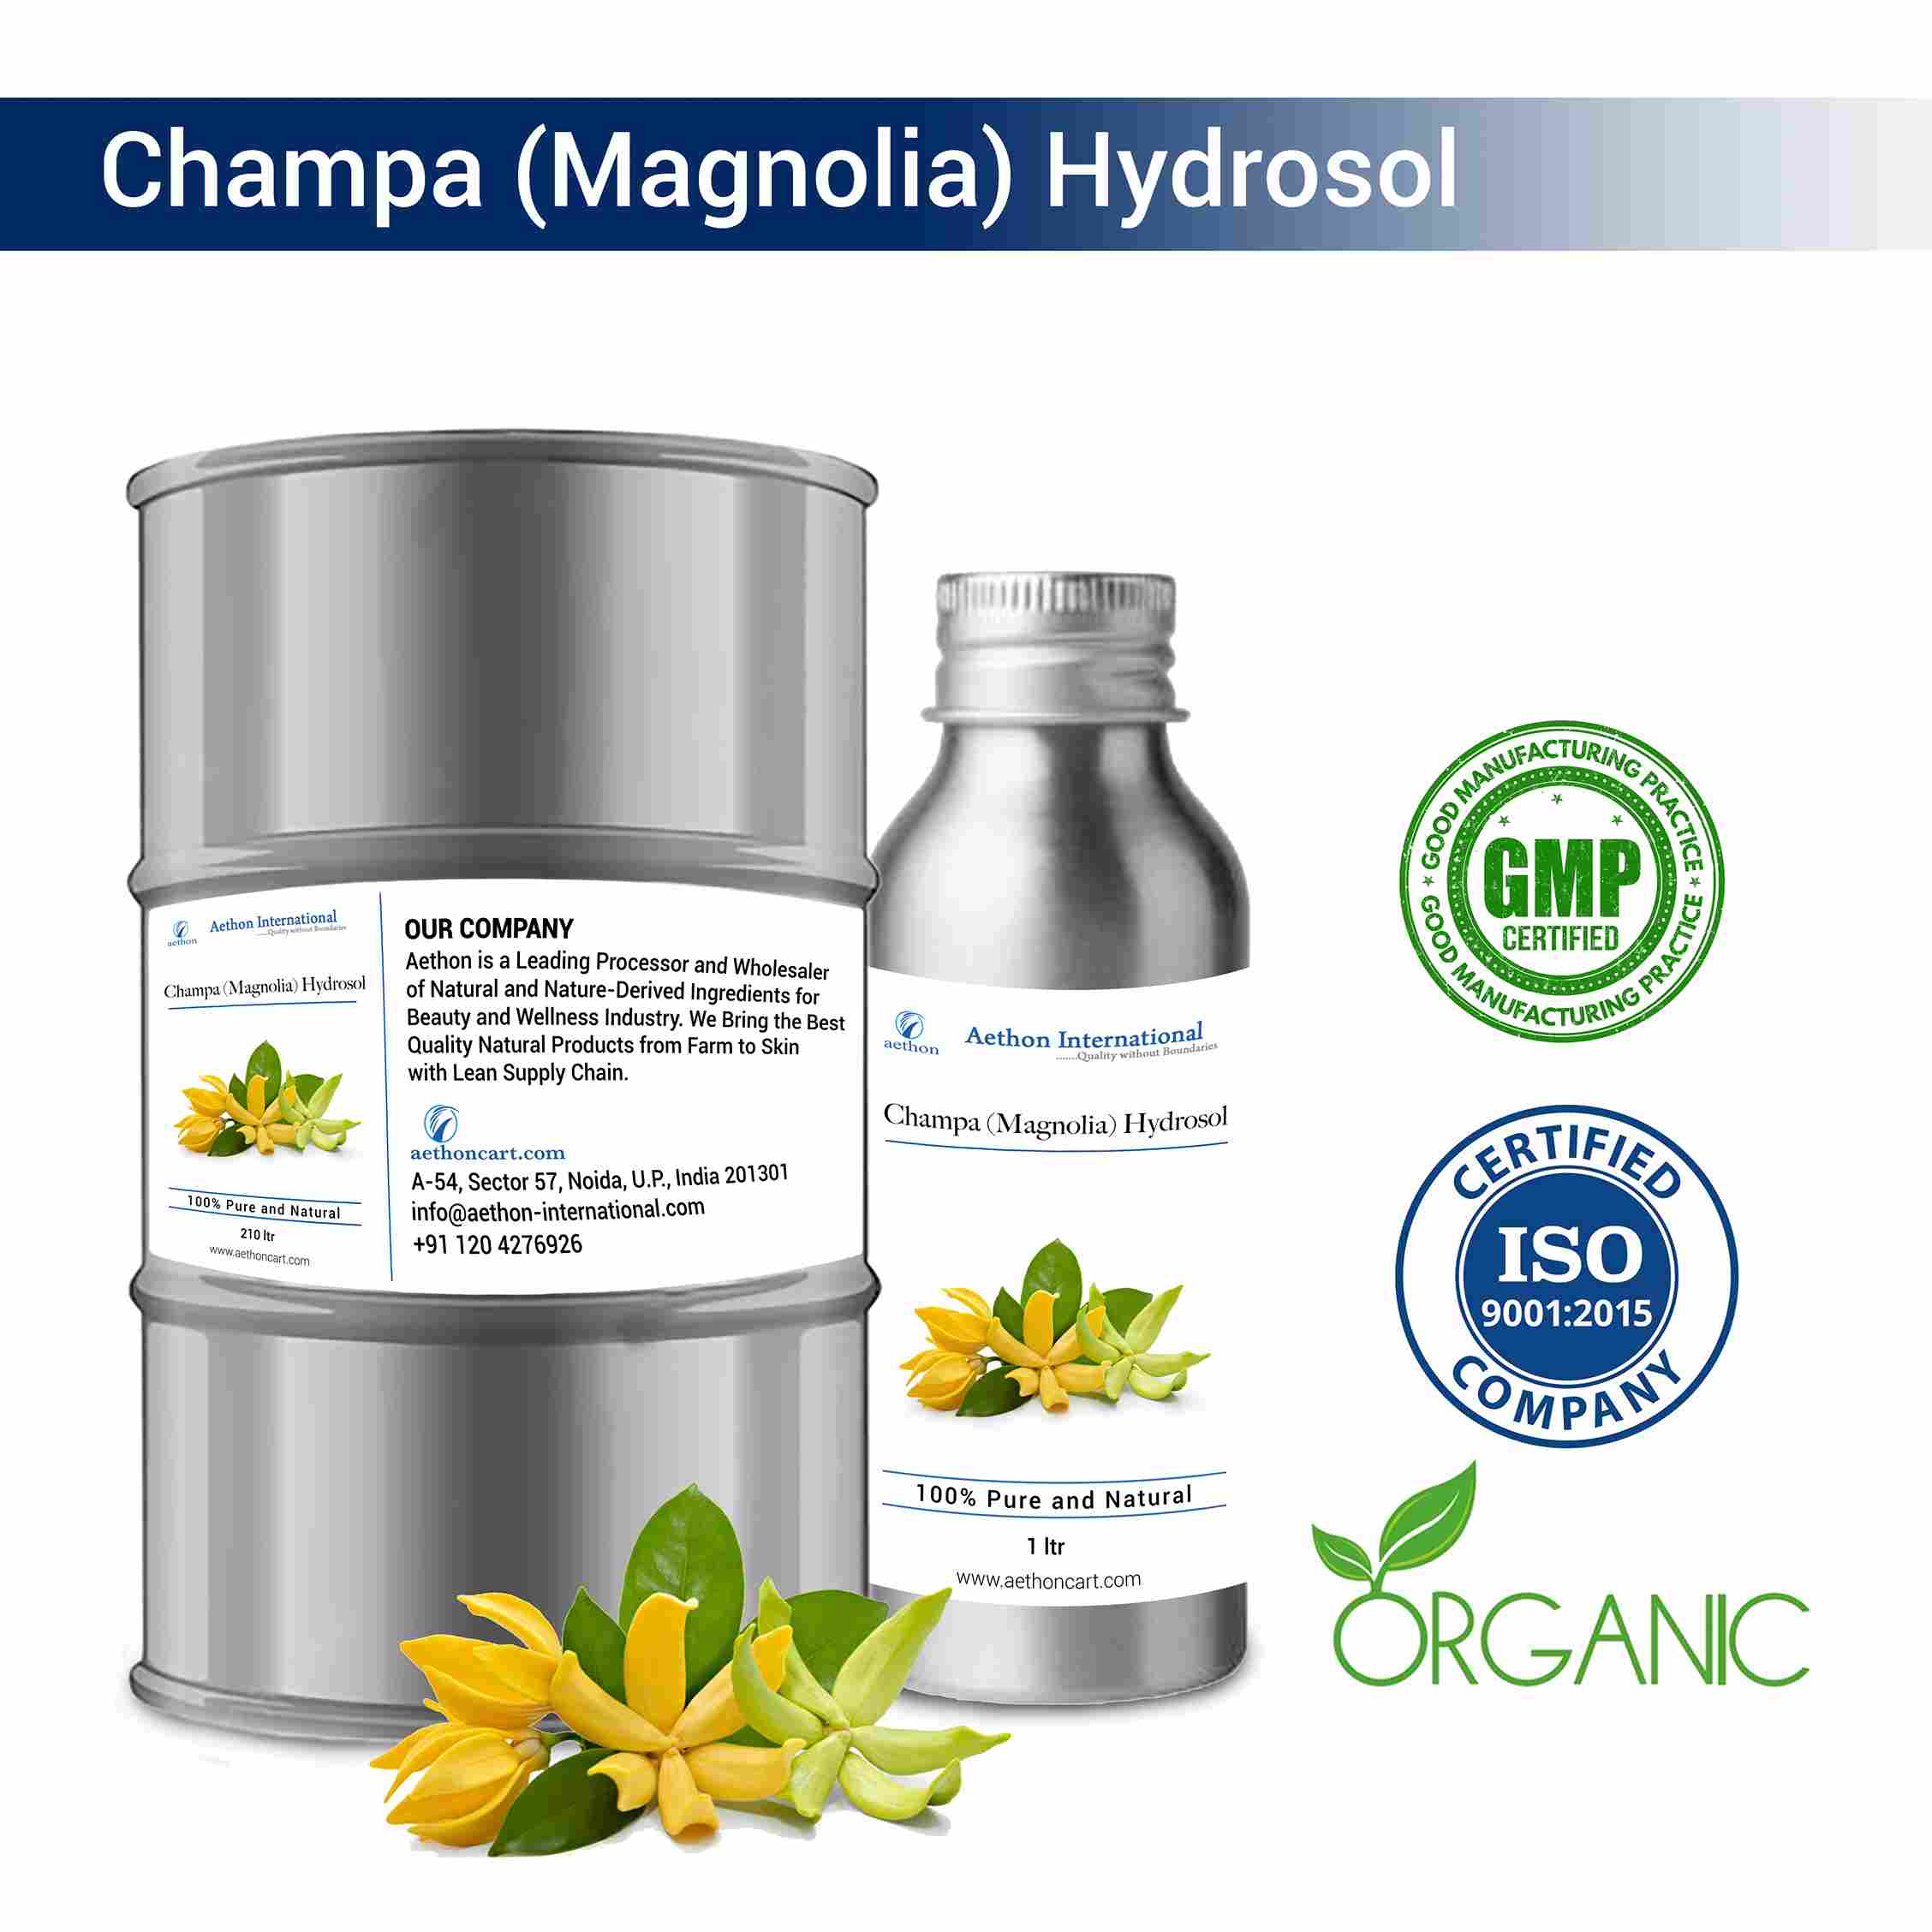 Champa (Magnolia) Hydrosol